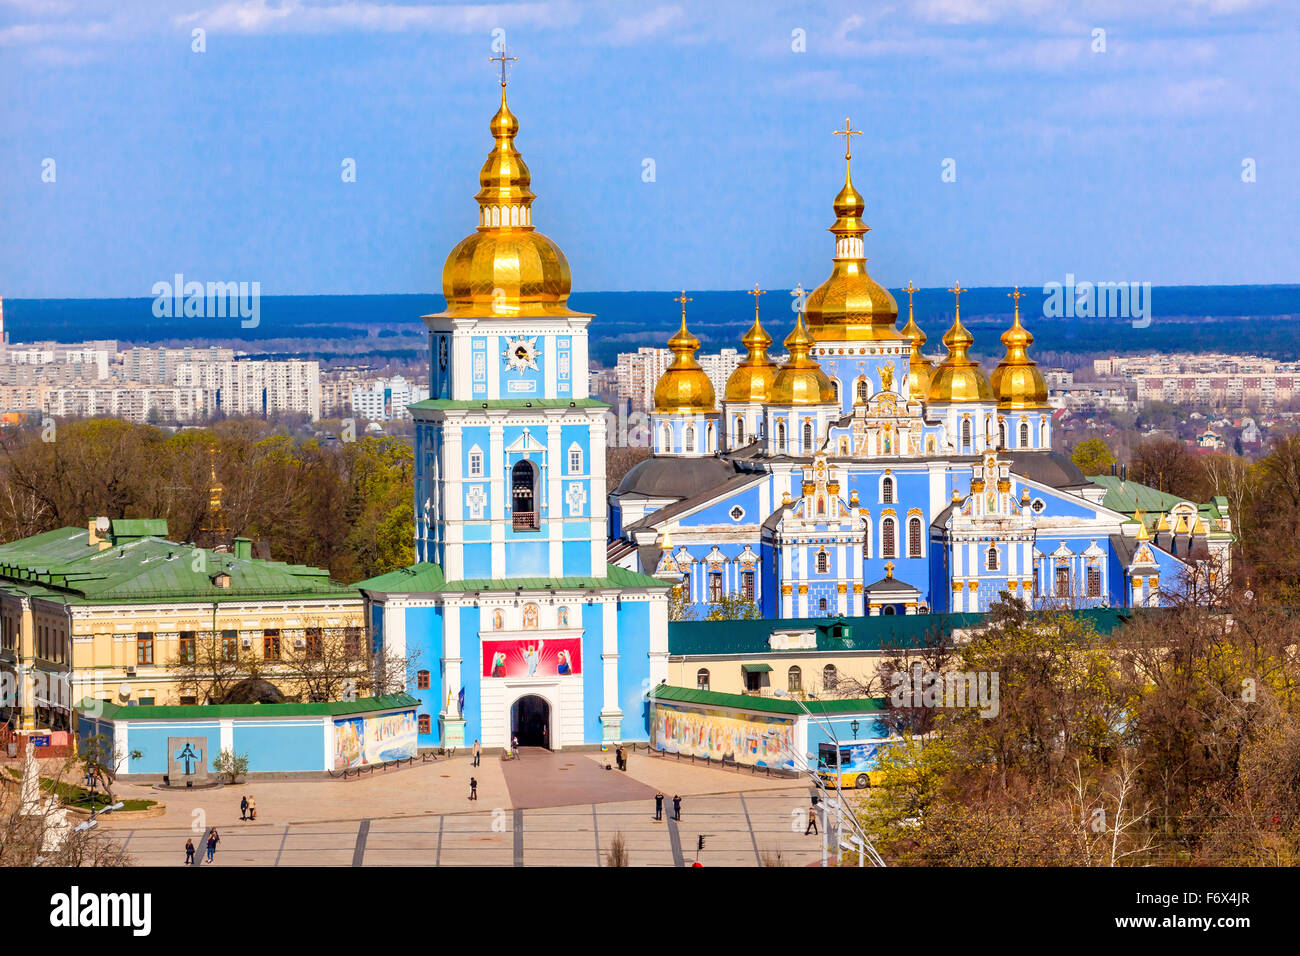 Monastère Saint Michel clochers Cathédrale Spires Façade dôme doré Tour de Kiev Ukraine. Banque D'Images